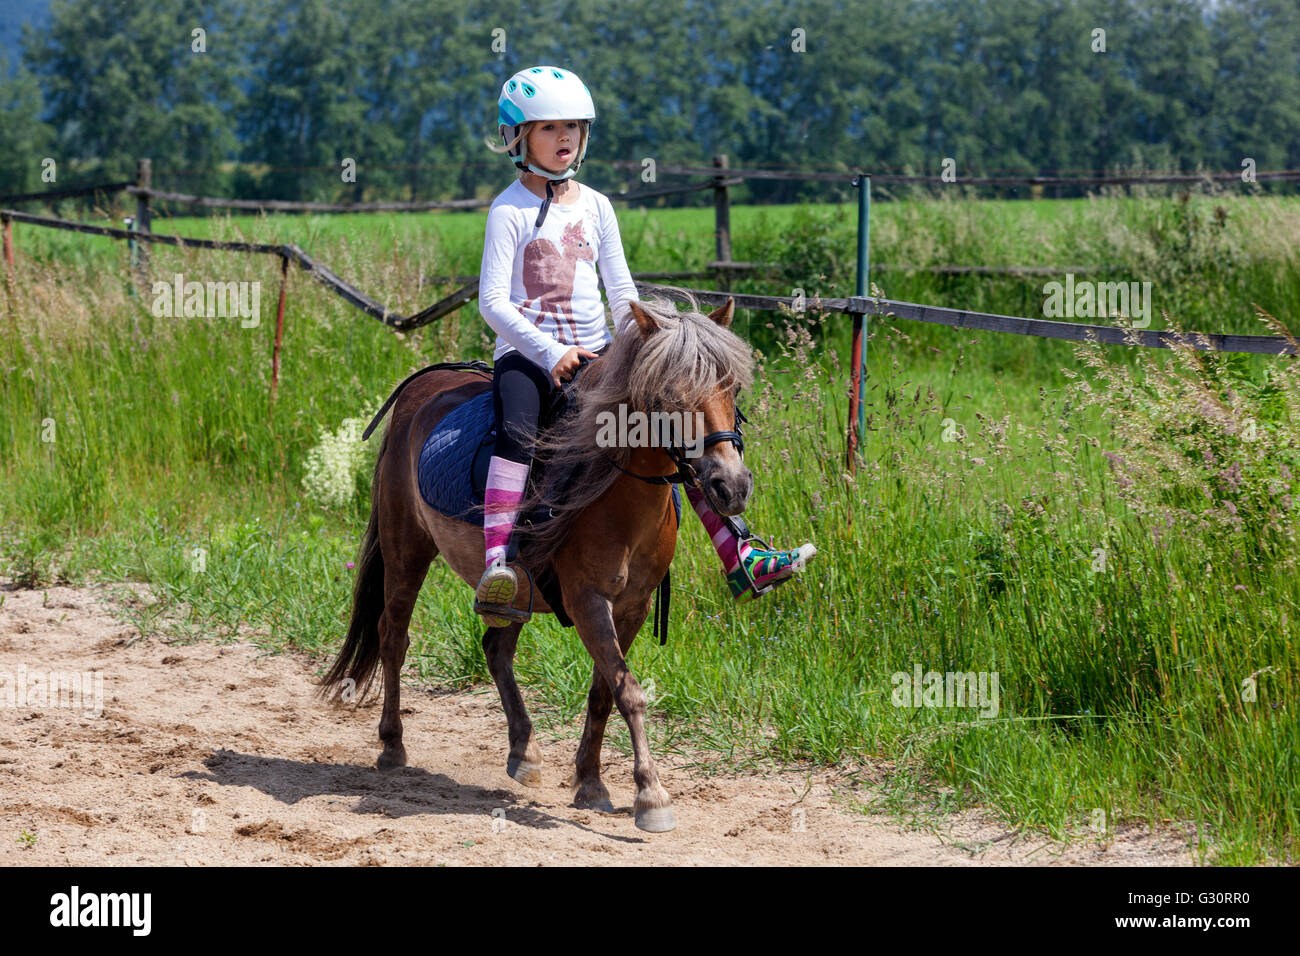 Reiten Junges Kind Reiten Pferd, Mädchen mit Pony, Kind auf Pony Stockfoto